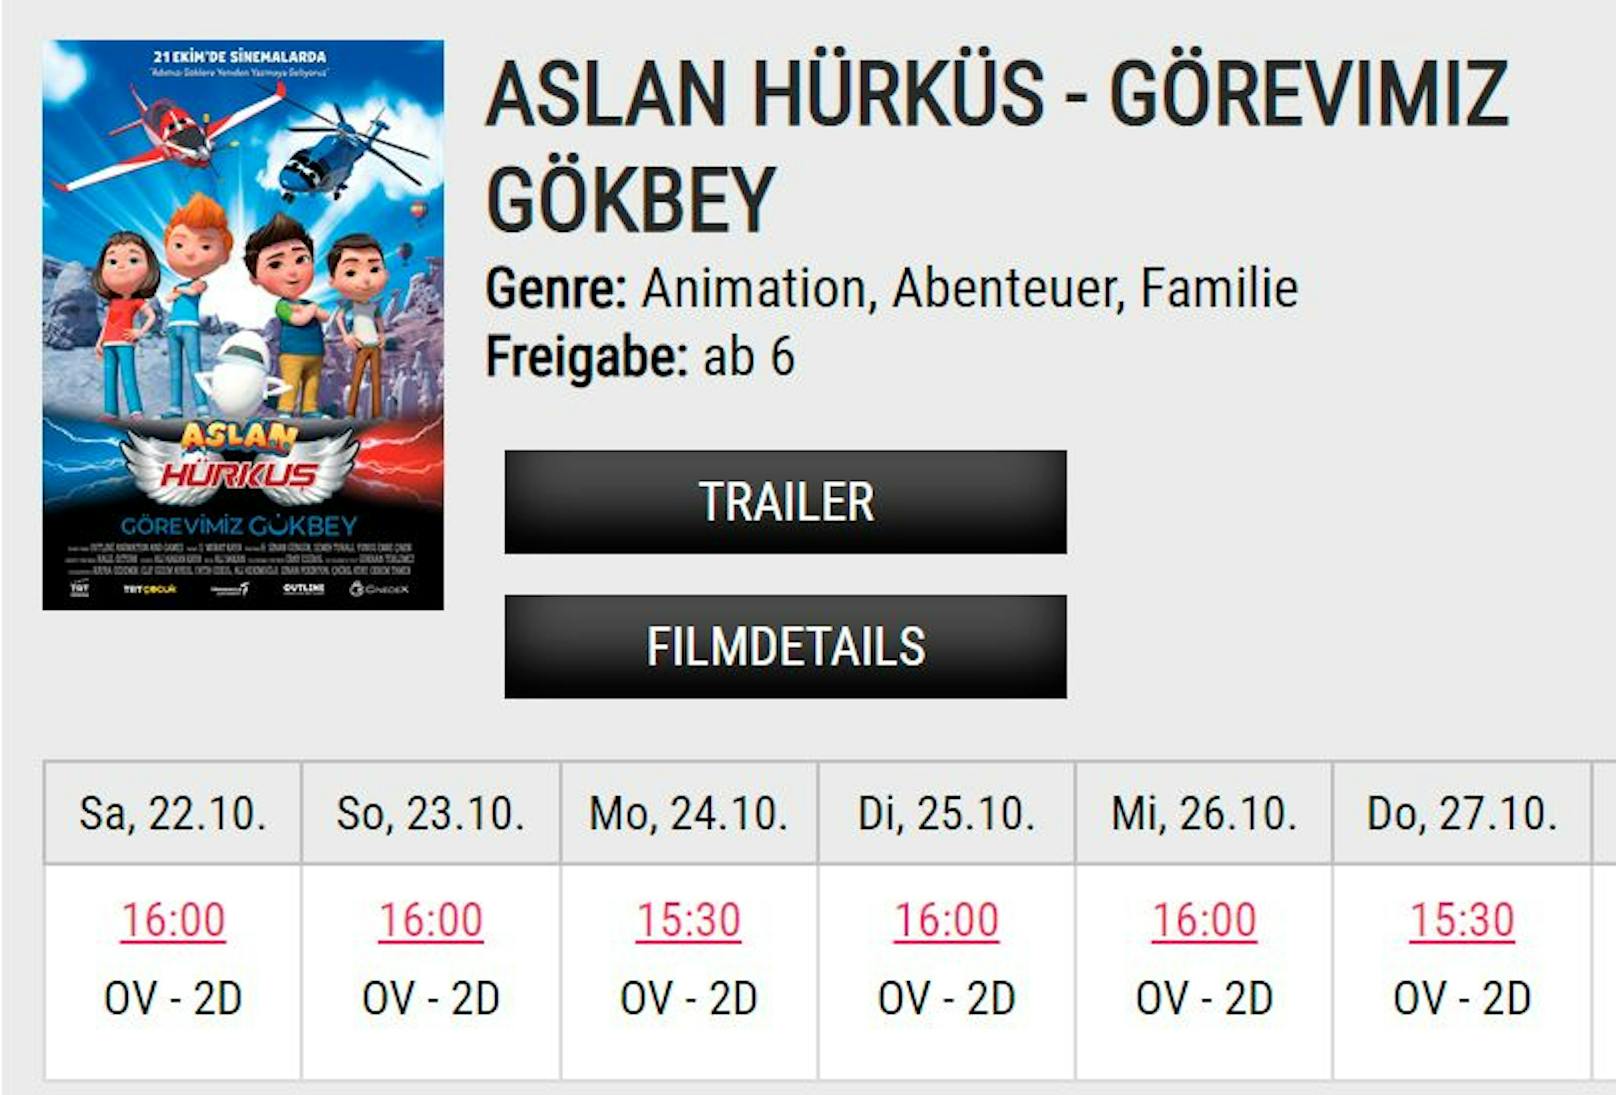 Der türkische Animationsfilm "Aslan Hürküs" feierte Premiere in St. Pölten: Türkische Originalfassung mit deutschen Untertiteln.